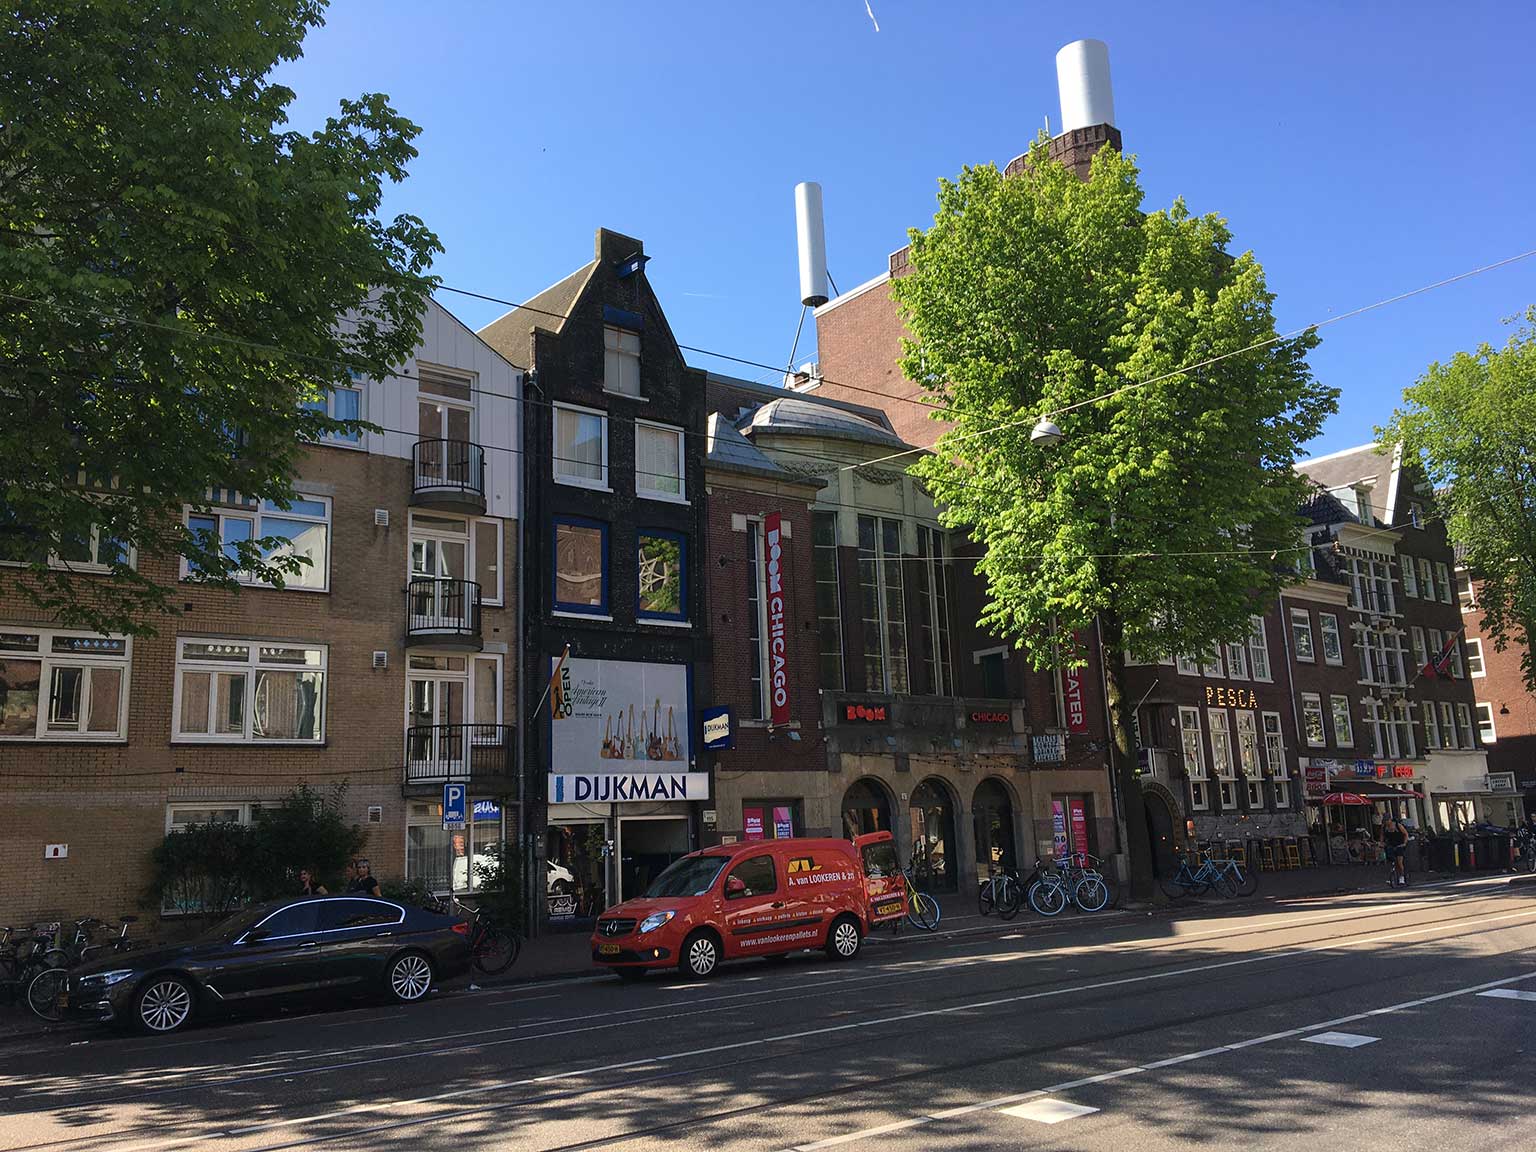 Rozengracht 111 tot 139, Amsterdam, met Dijkman Muziek, Boom Chicago en het Roothaanhuis